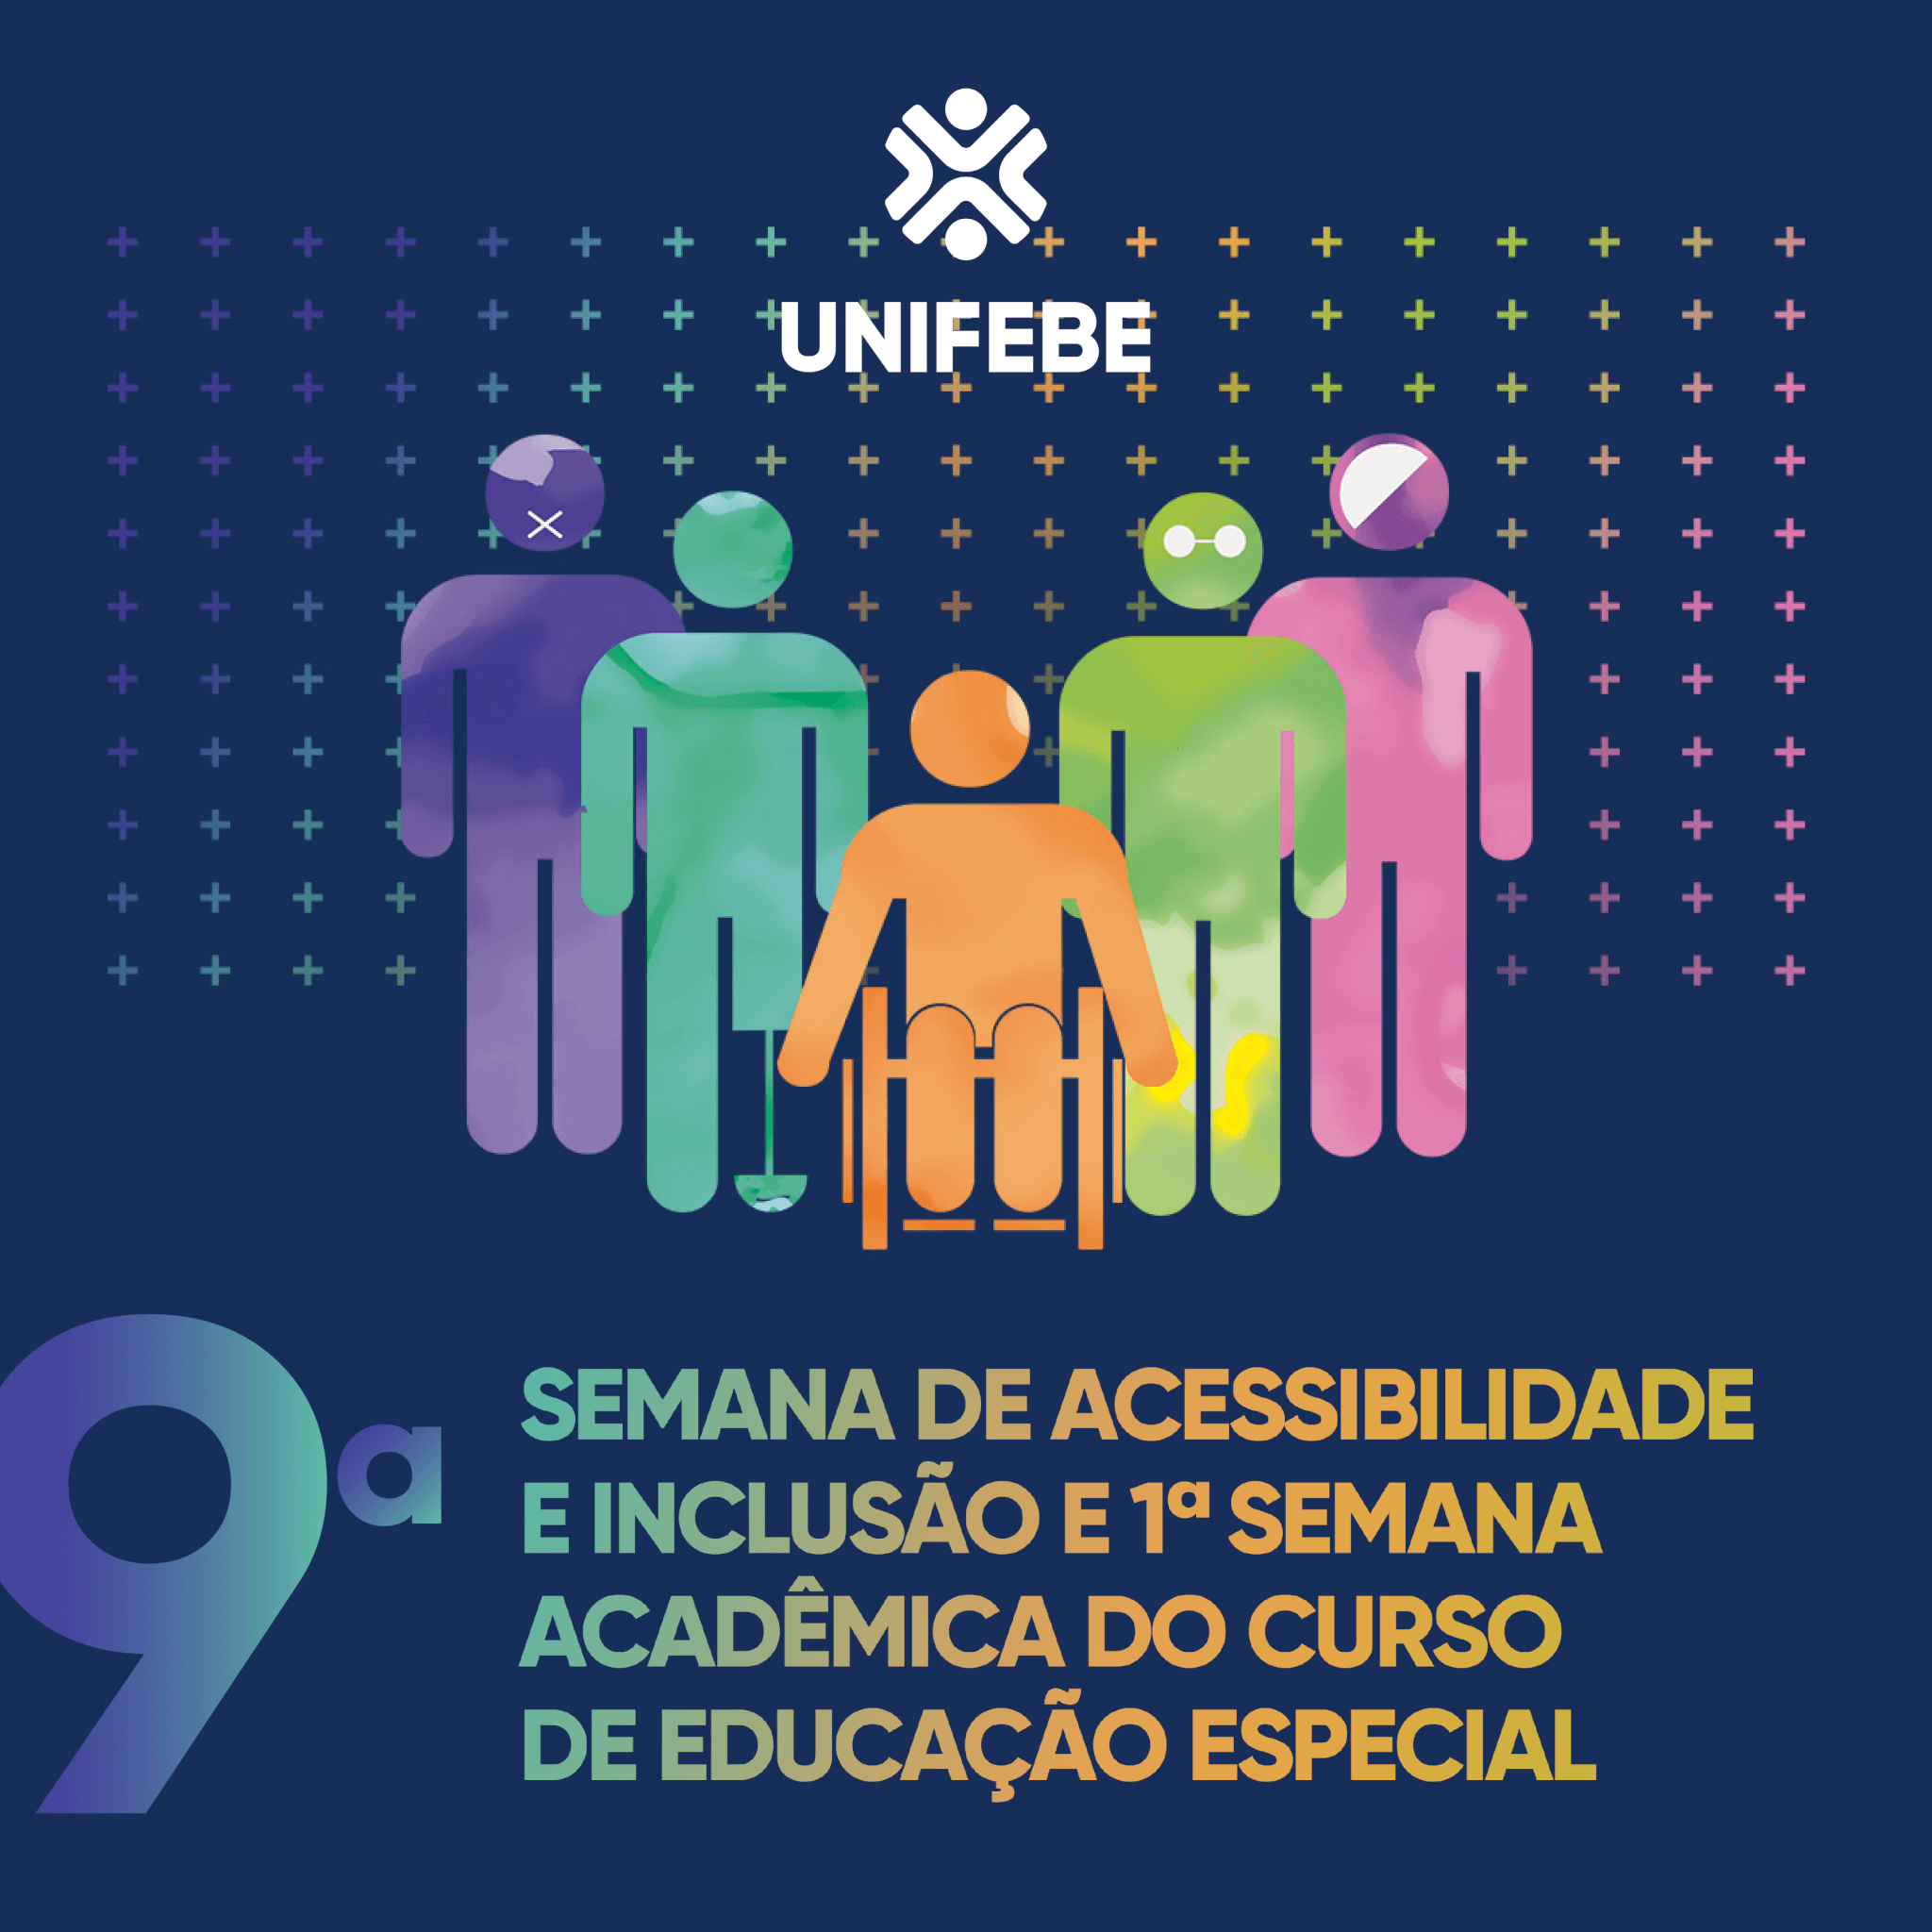 UNIFEBE abre inscrições para a IX Semana de Acessibilidade e Inclusão e 1ª Semana Acadêmica do curso de Educação Especial